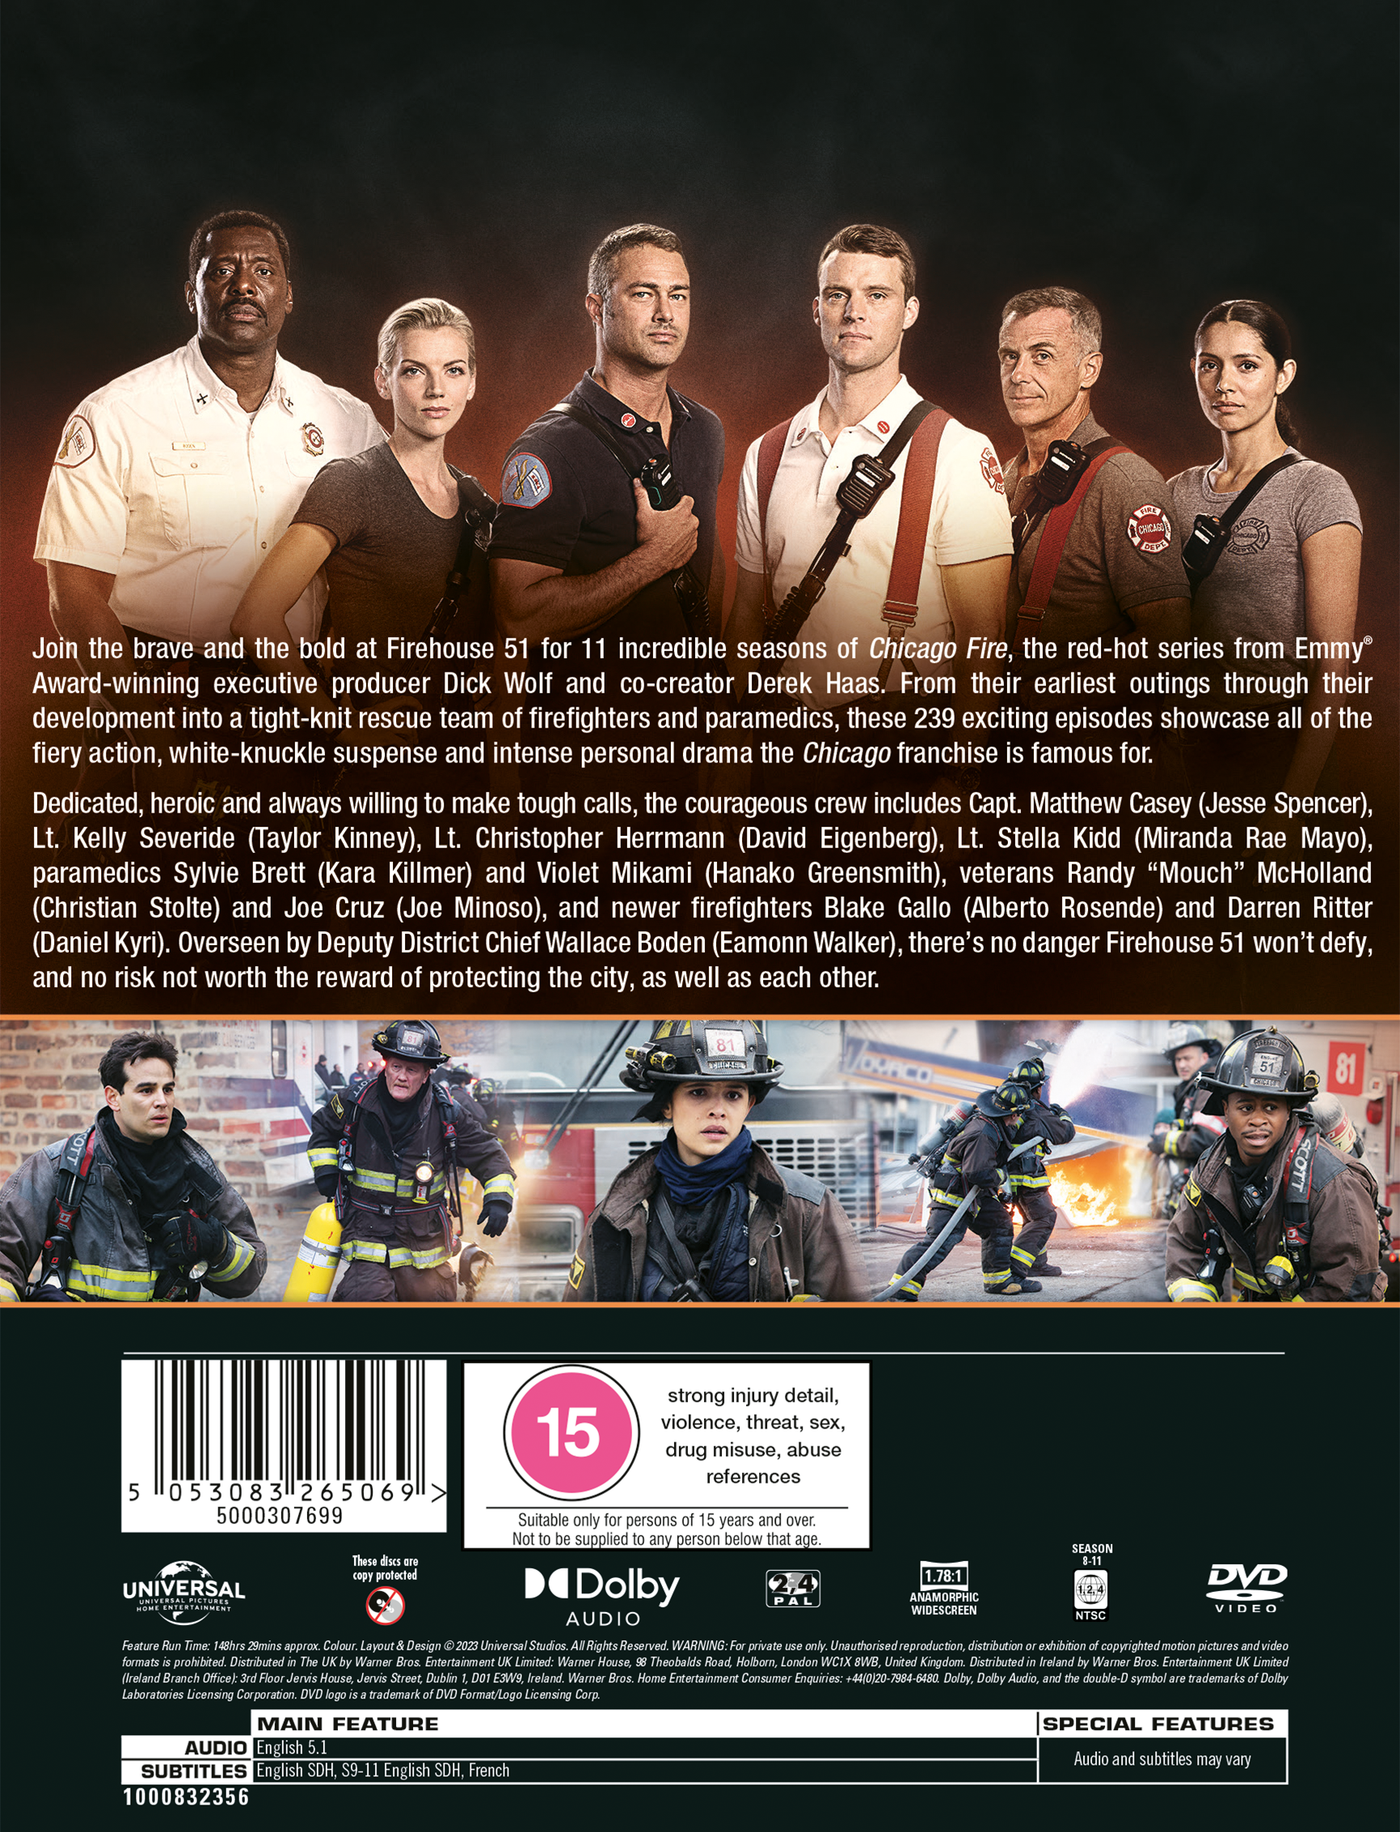 Chicago Fire-Saison 11 (avec Version Francaise) [DVD]